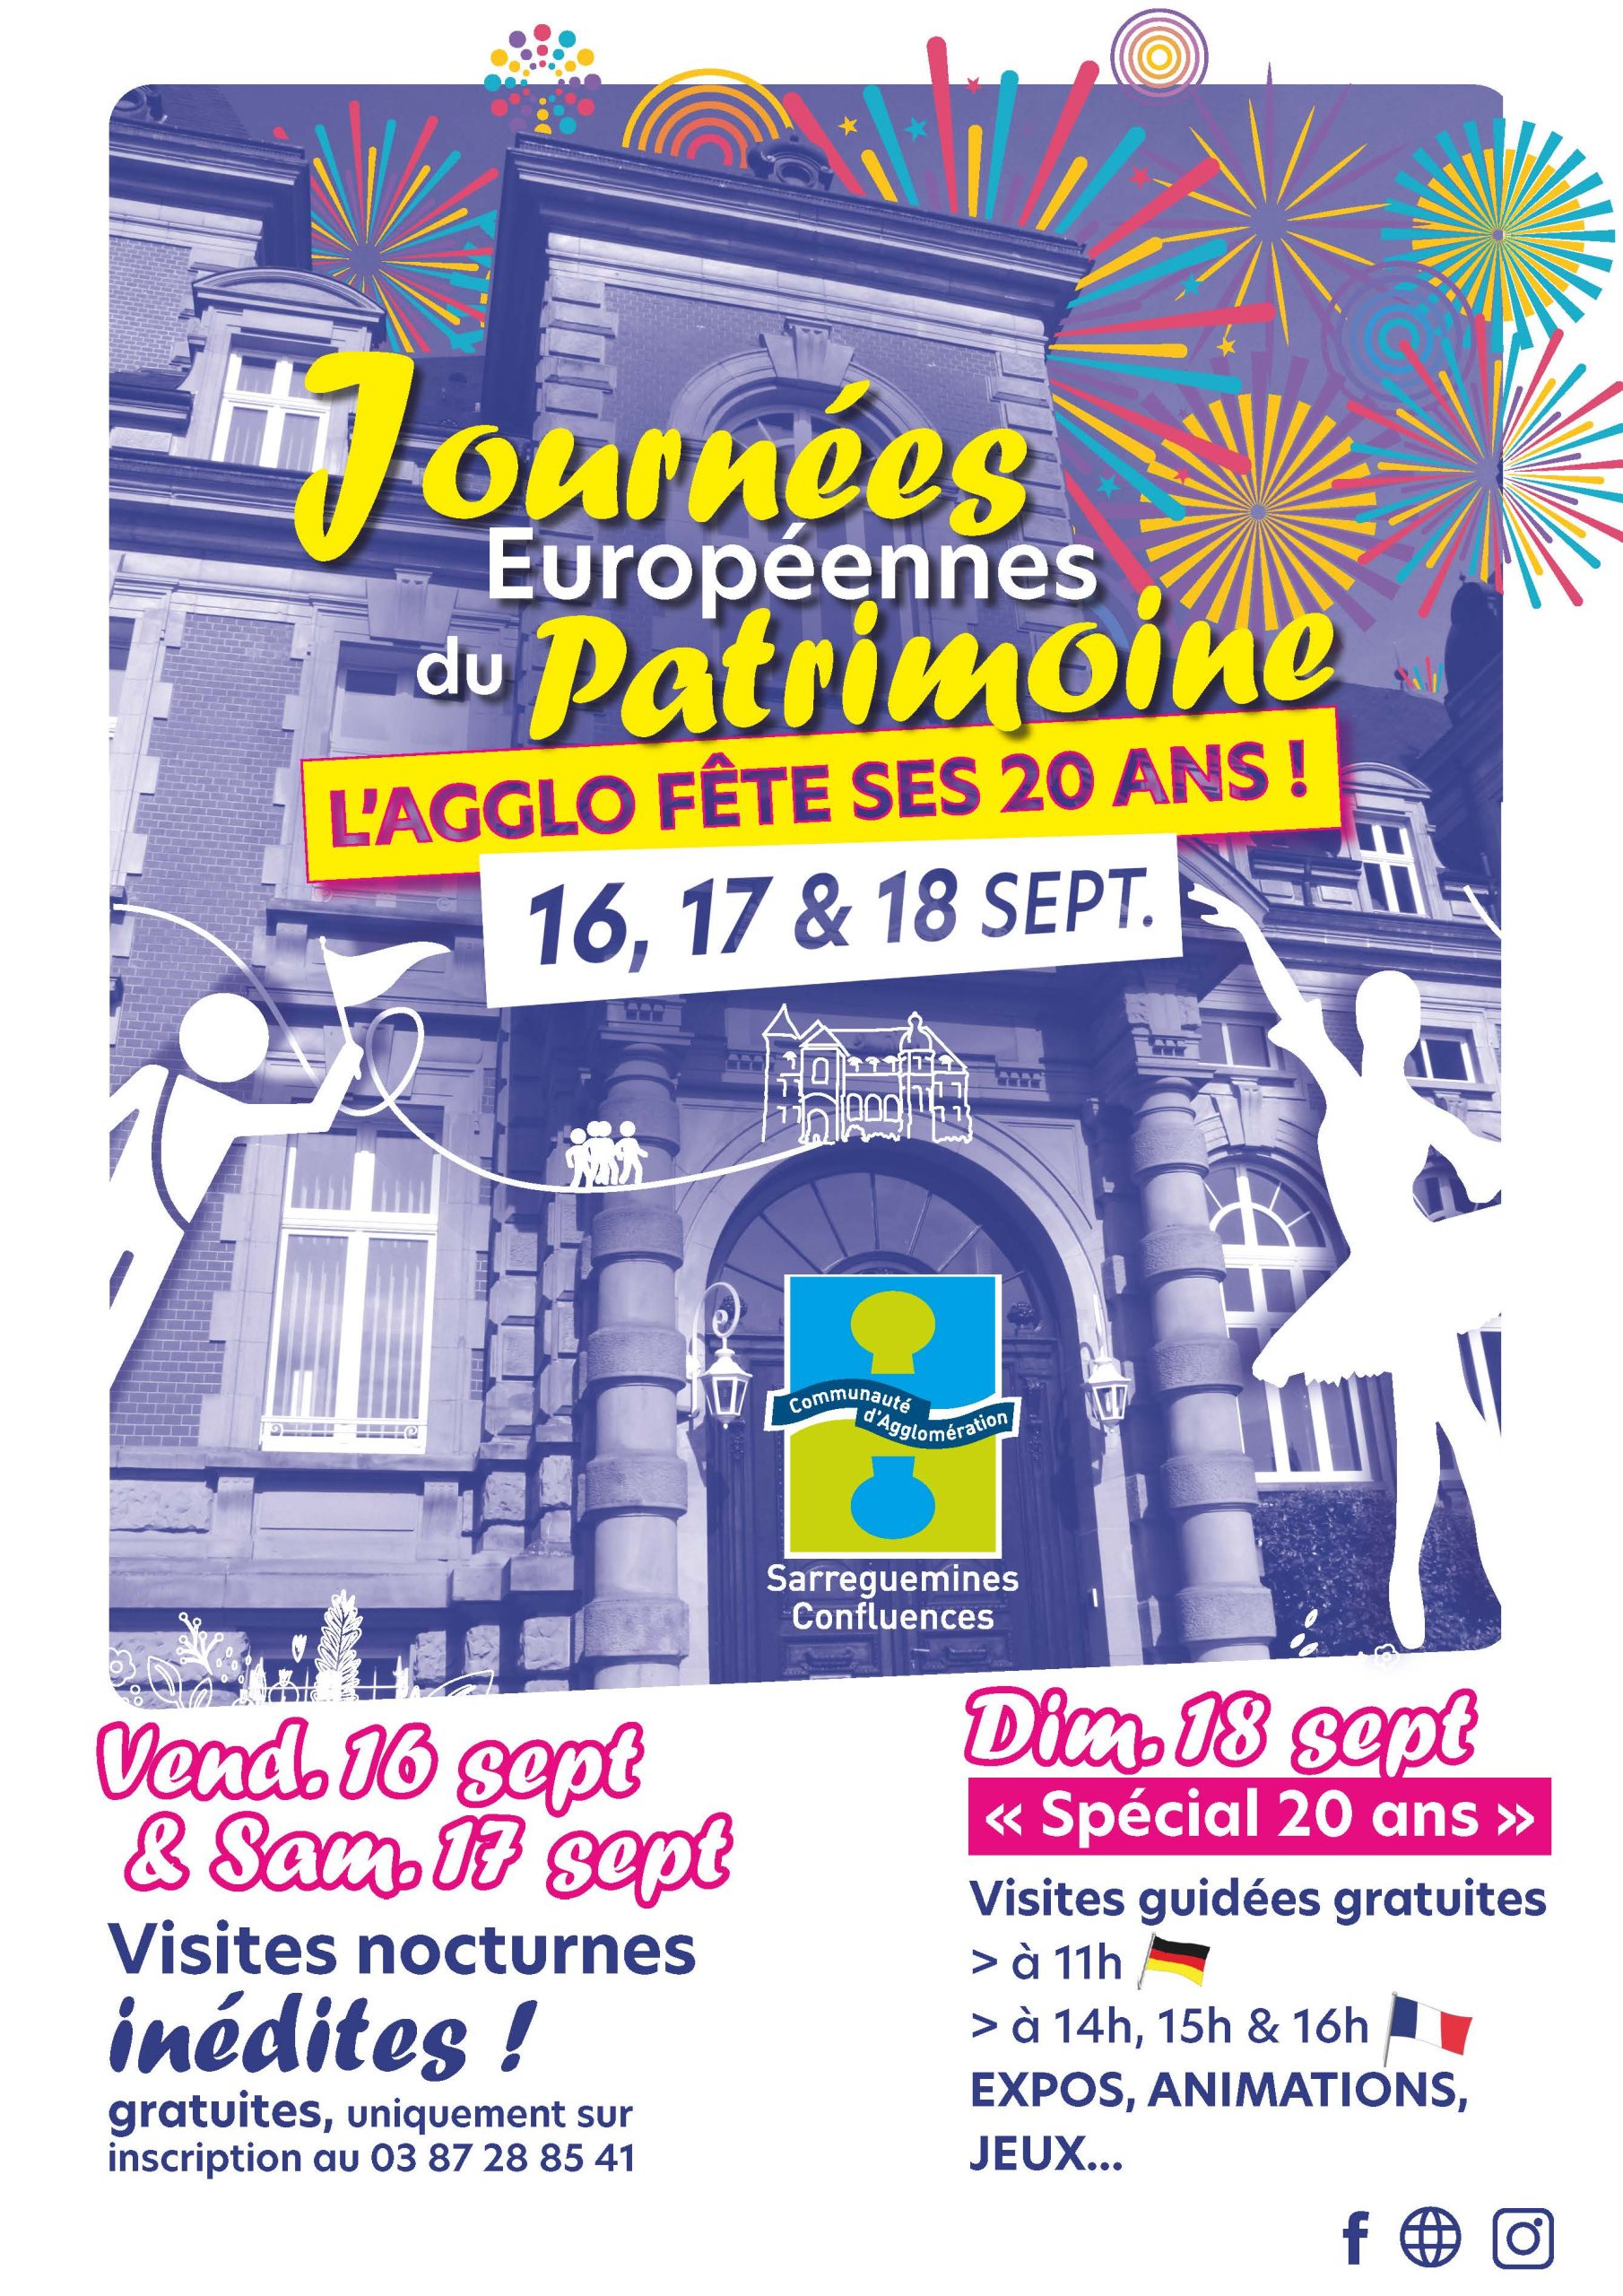 Journées Européennes du Patrimoine : programme du dimanche 18 septembre